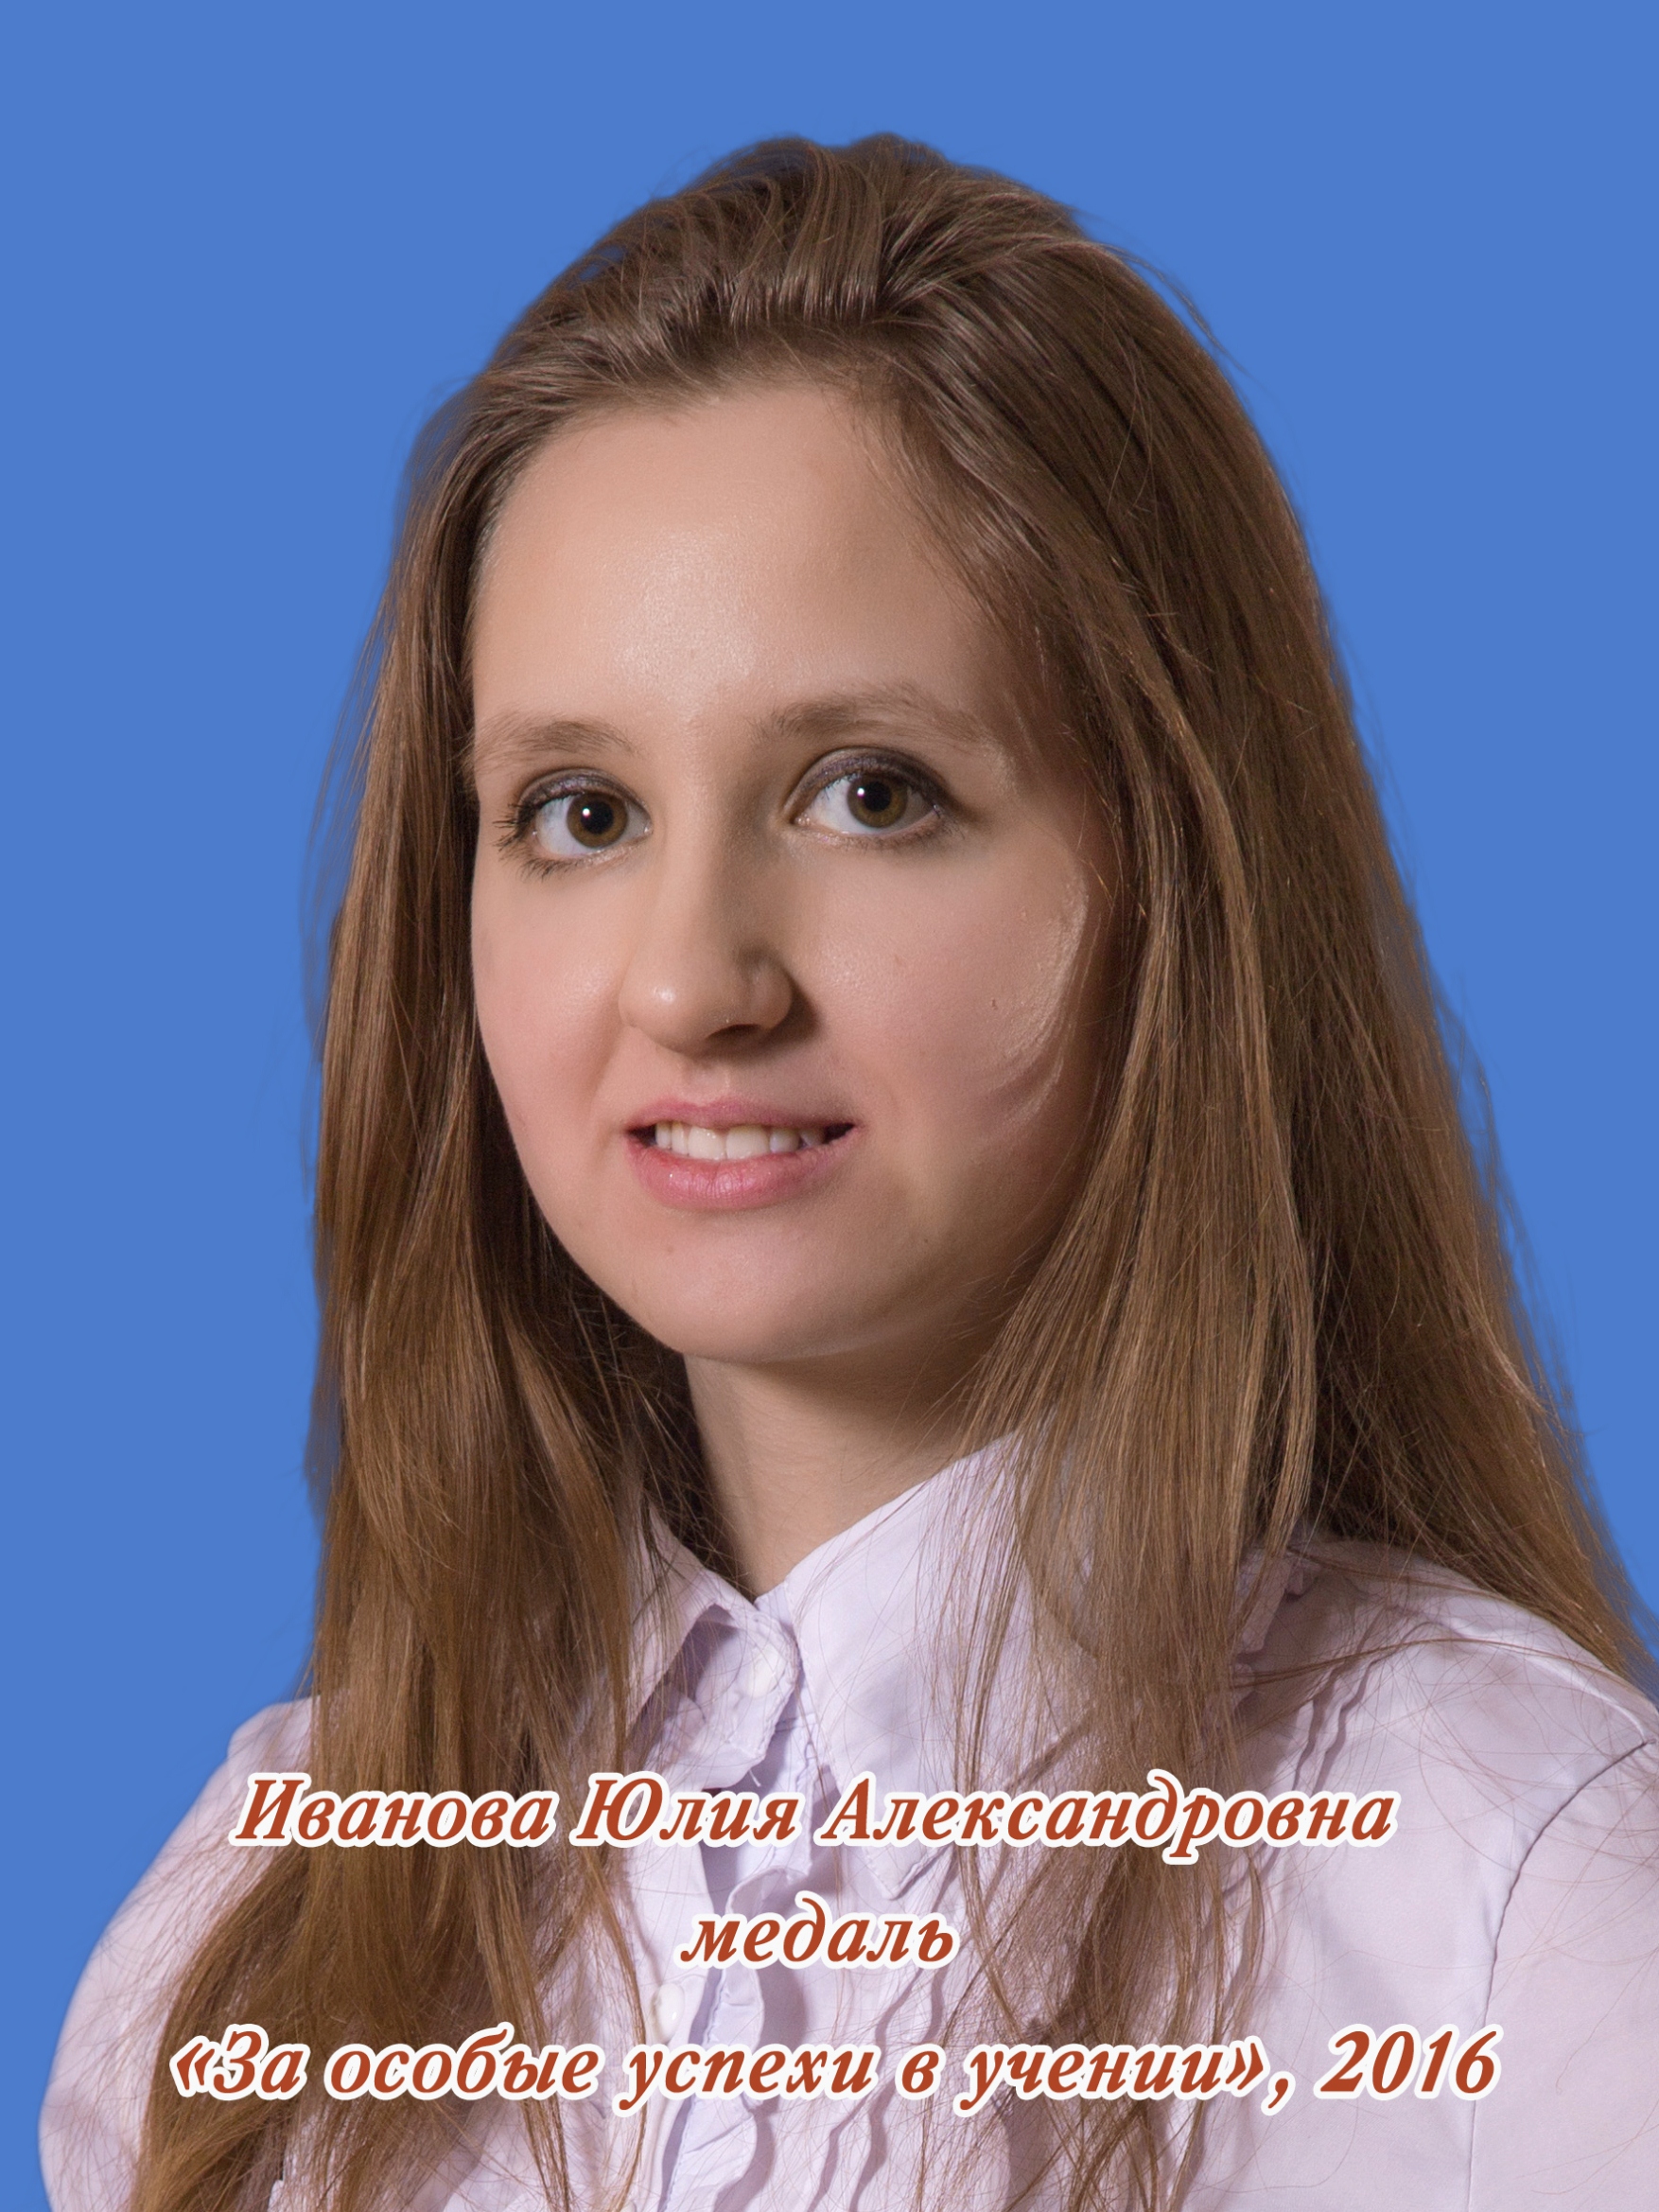 Иванова Юлия Александровна.